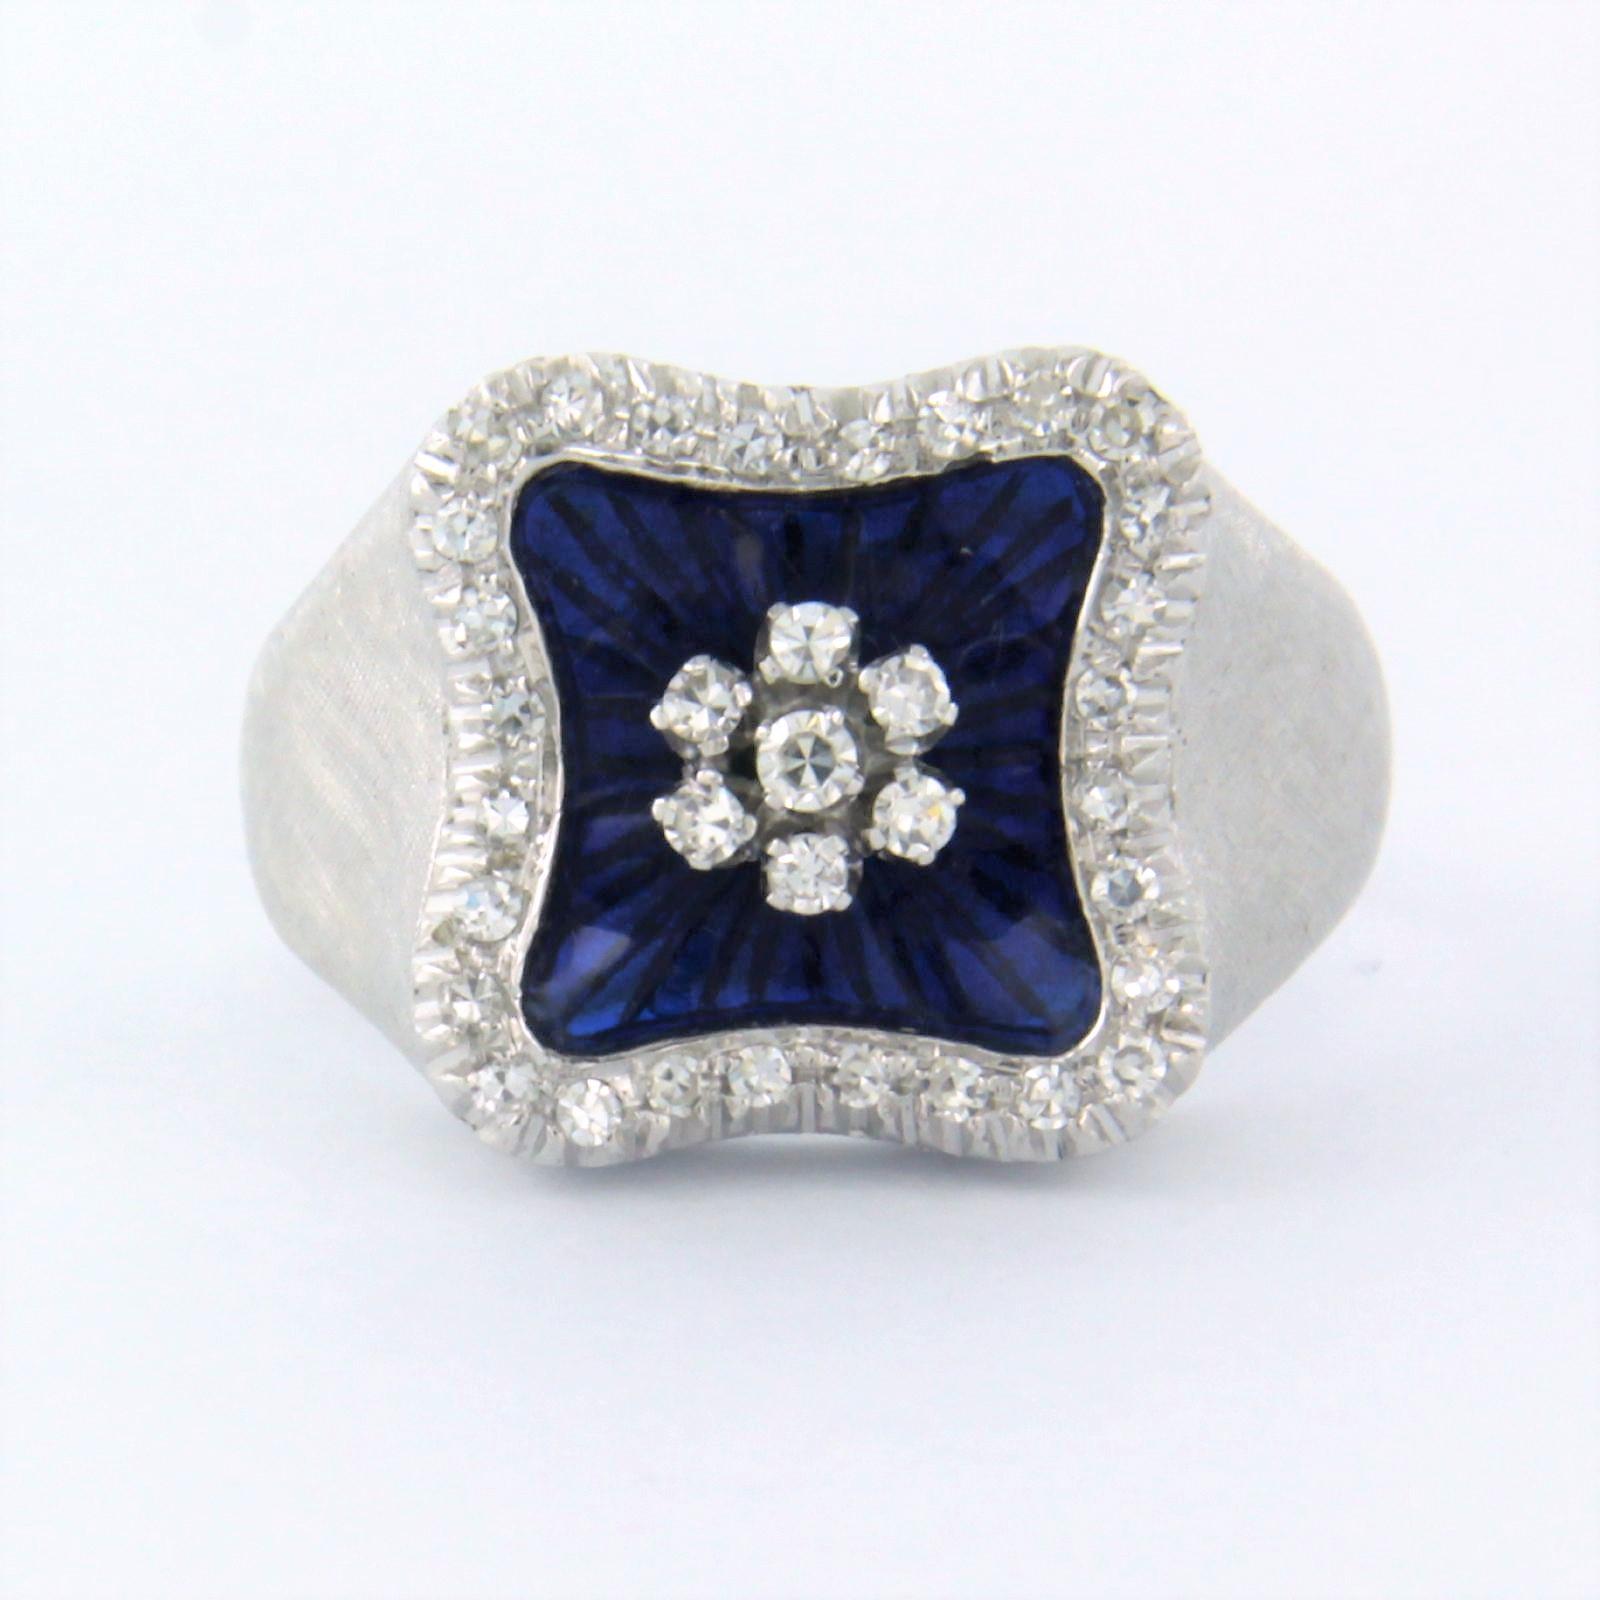 Ring aus 18 Karat Weißgold, verziert mit blauer Emaille und besetzt mit Diamanten im Einzelschliff. 0.45ct - F/G - VS/SI - Ringgröße U.S. 7.5 - EU. 17.75(56)

detaillierte Beschreibung:

Die Oberseite des Rings ist 1,3 cm breit und 5,8 mm